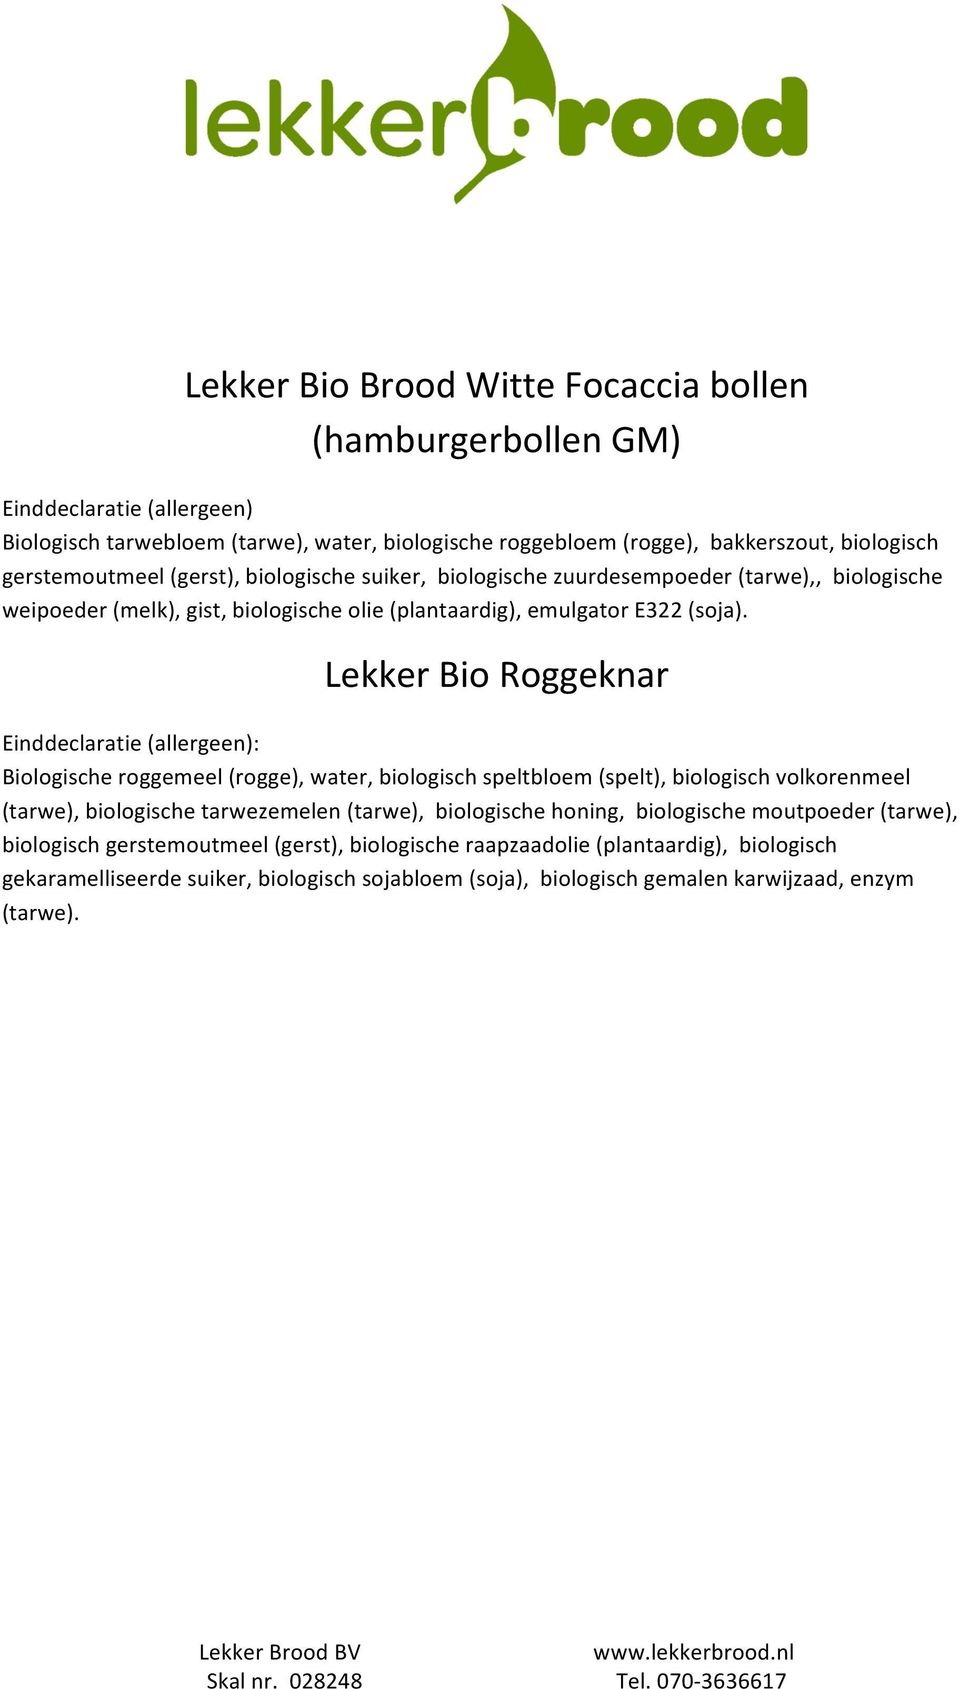 Lekker Bio Roggeknar : Biologische roggemeel (rogge), water, biologisch speltbloem (spelt), biologisch volkorenmeel (tarwe), biologische tarwezemelen (tarwe), biologische honing,